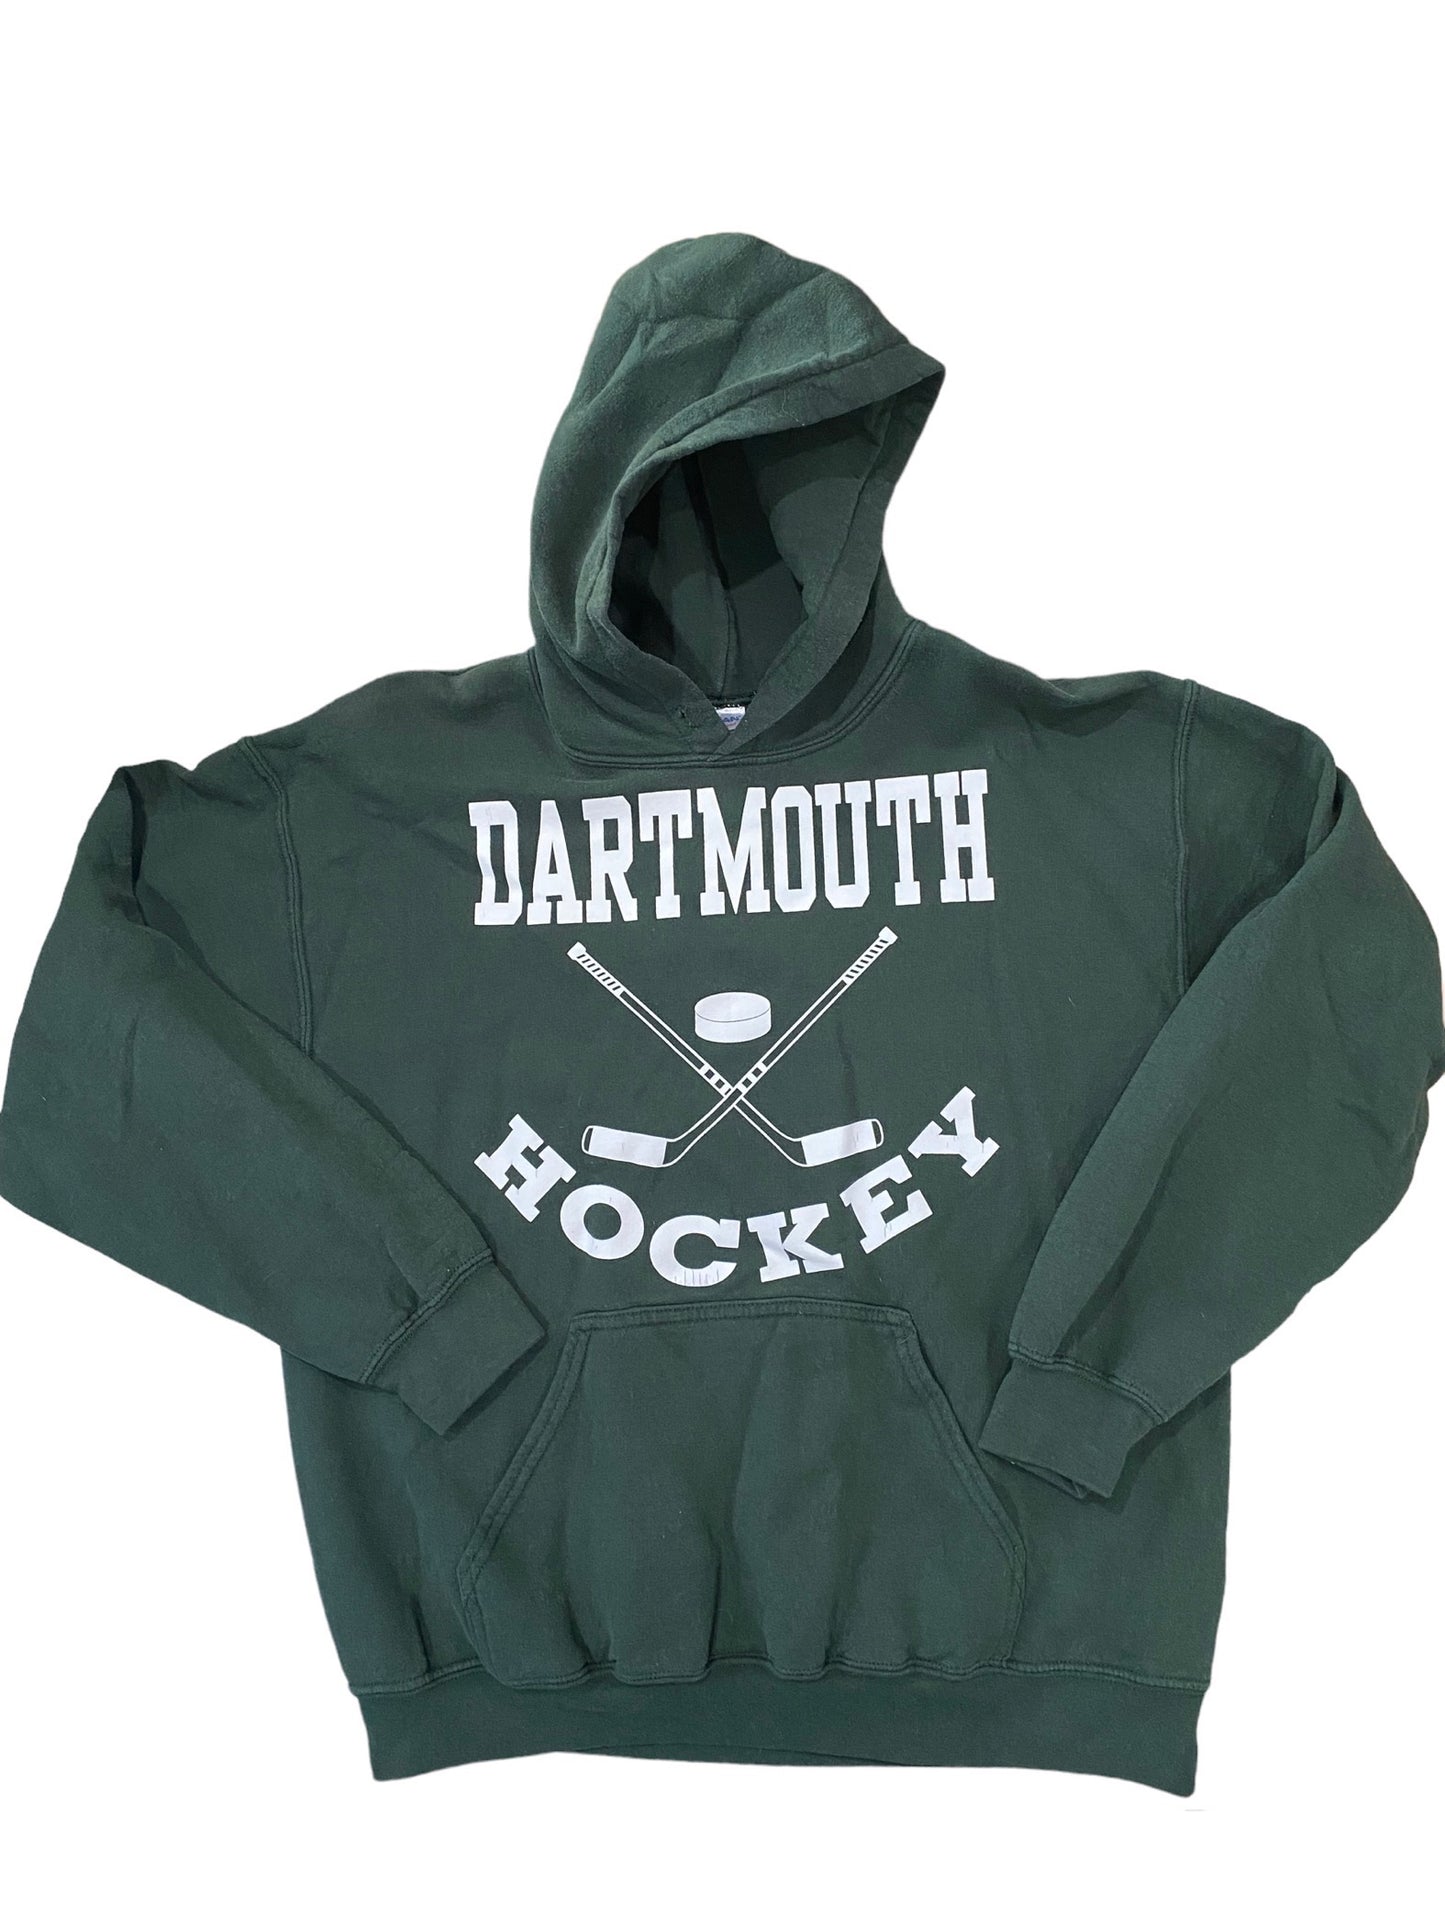 Dartmouth Hockey sweatshirt